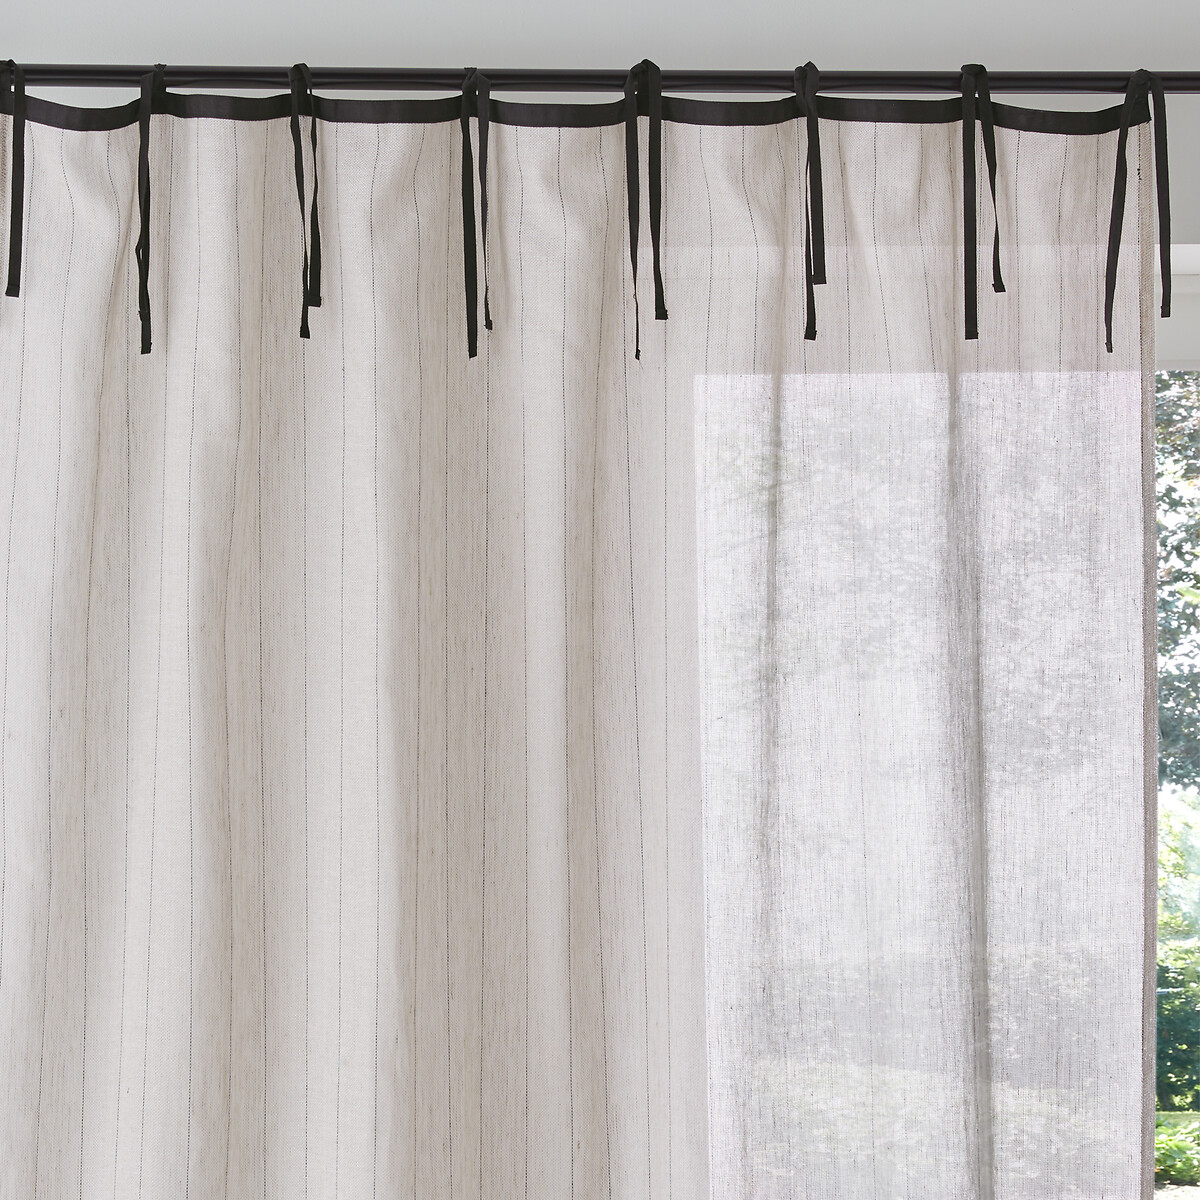 Vorhang nenio, mit Redoute | natur/schwarz La La Redoute bändern, leinen/baumwolle Interieurs aufhängung